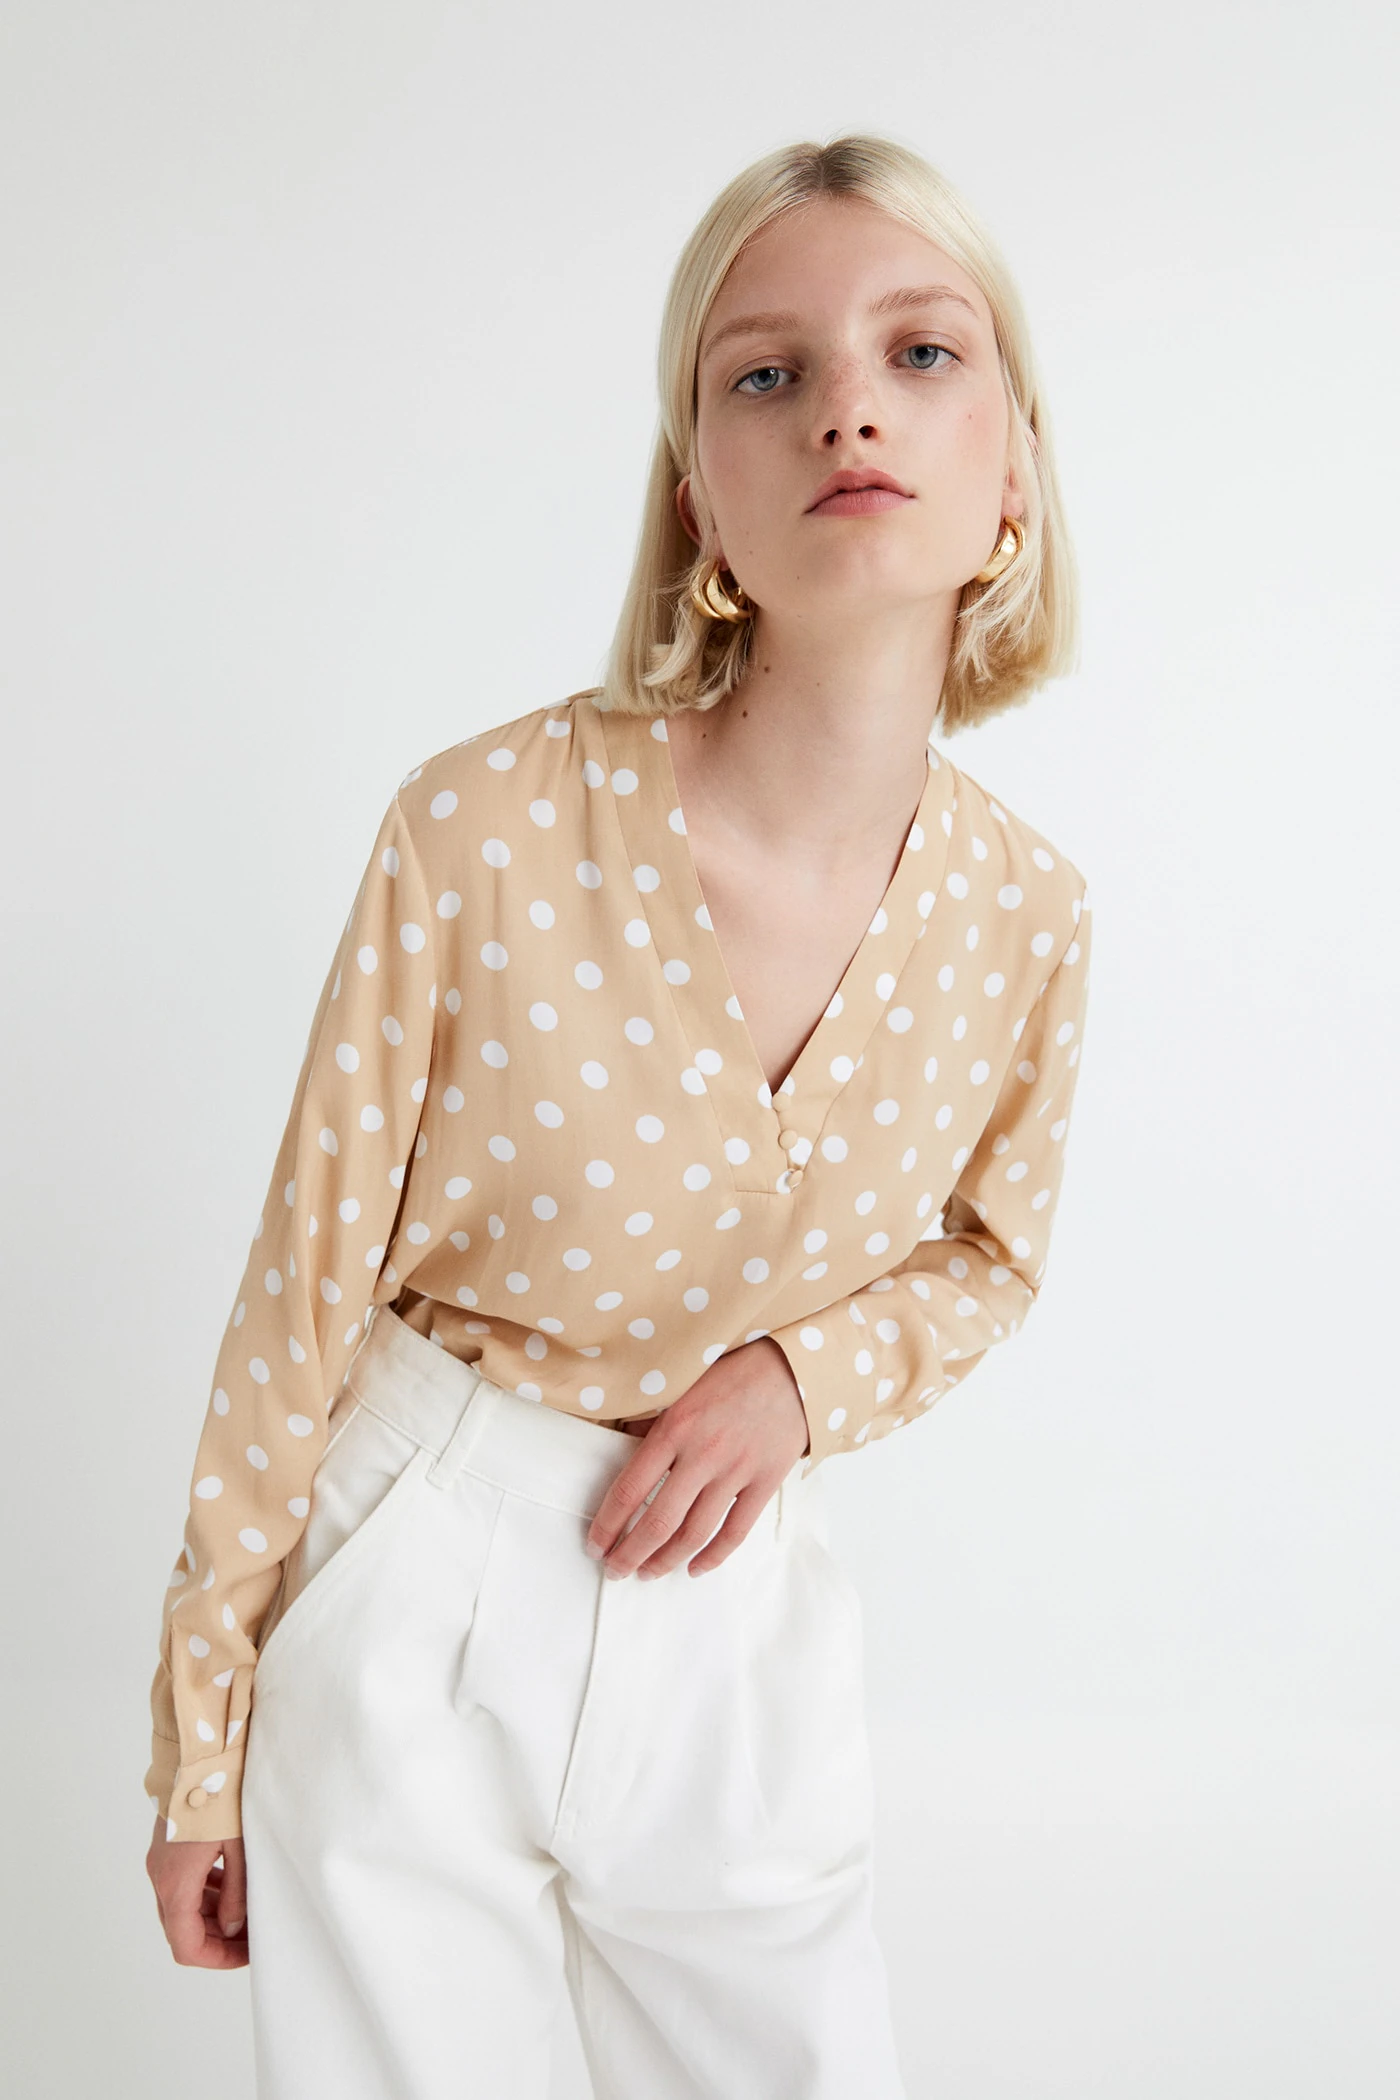 Fotos: Las blusas y camisas más bonitas de lo nuevo de Sfera para soñar con la primavera Mujer Hoy